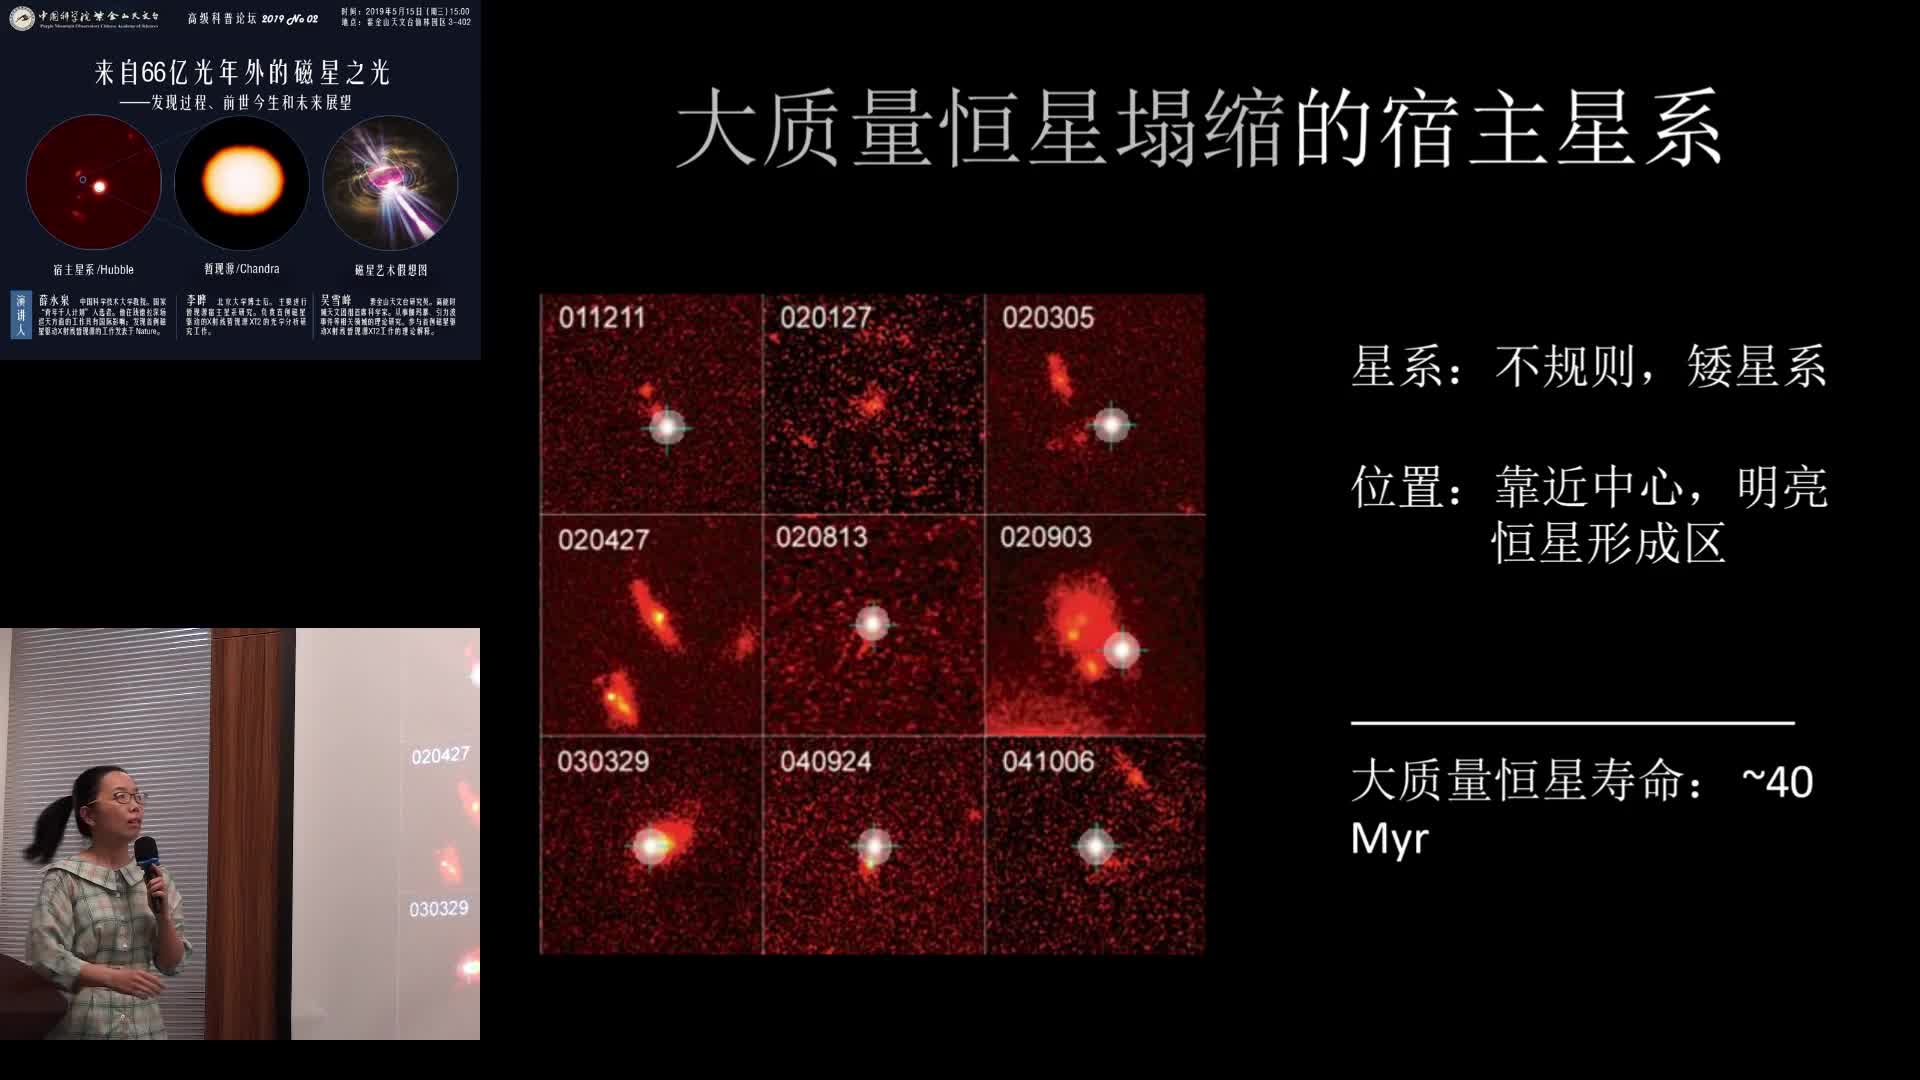 2019年5月15日 紫台高级科普论坛（第二期）：来自66亿光年外的磁星之光：发现过程、前世今生和未来展望（吴雪峰）